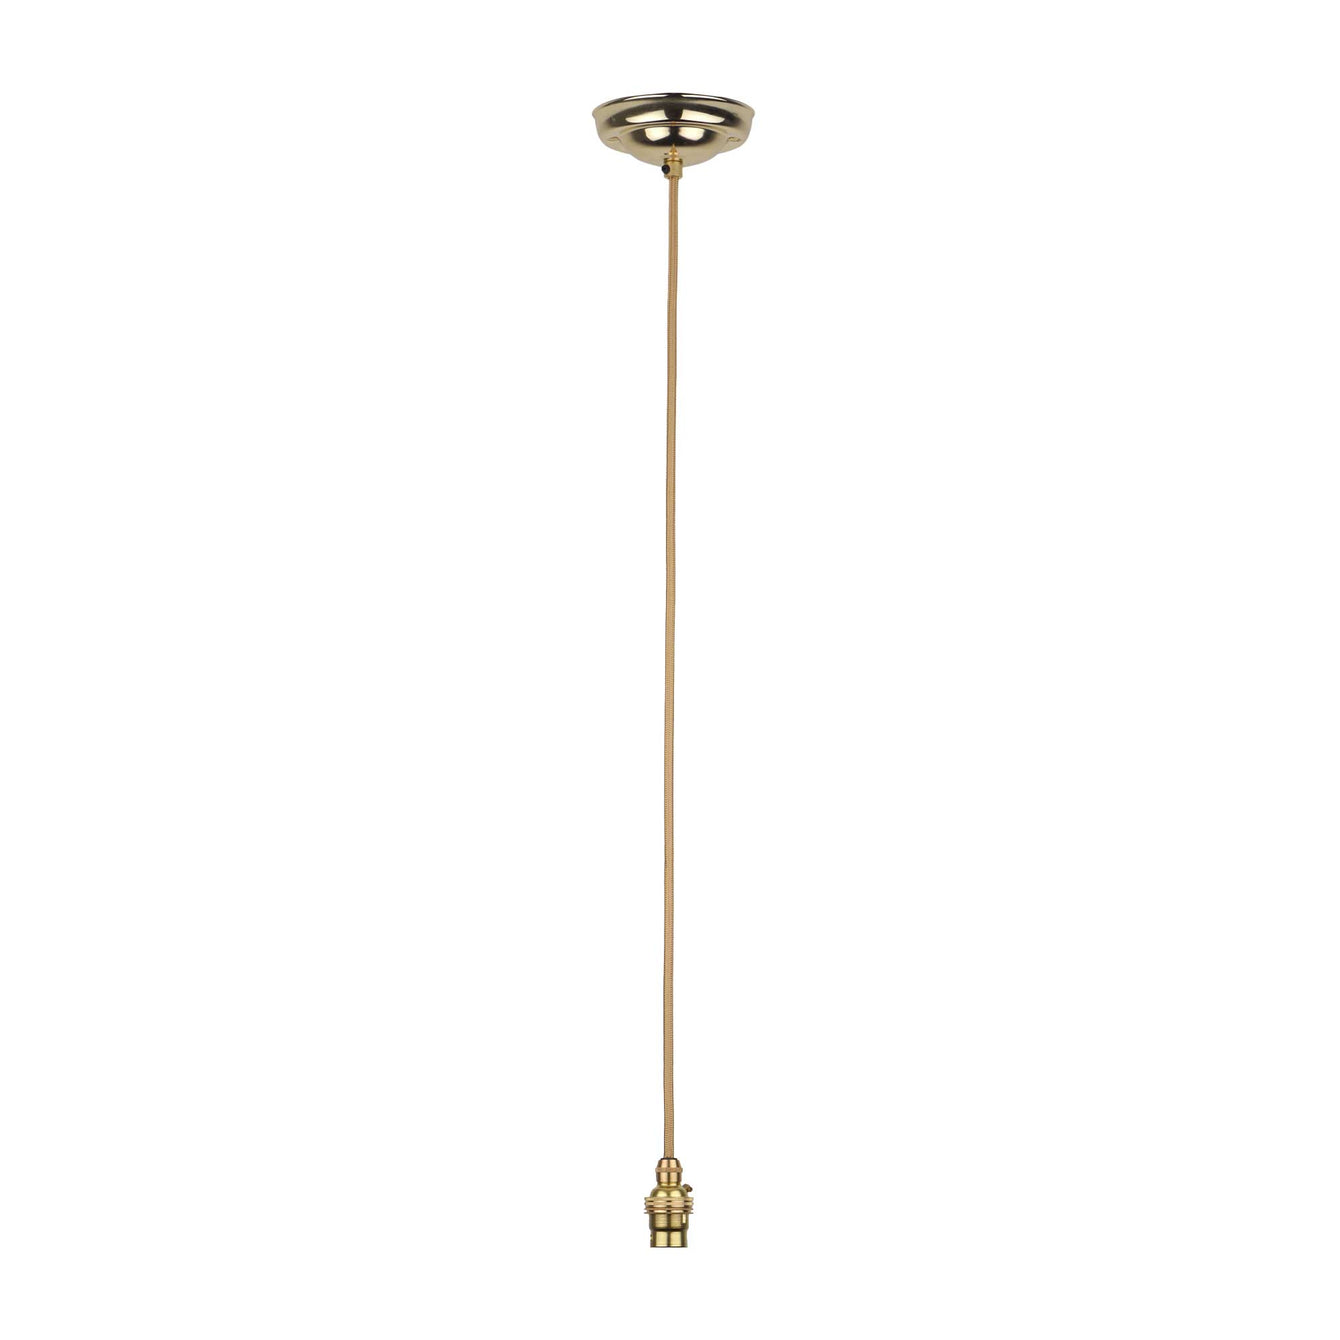 ElekTek Premium Pendant Light Kit DIY 108mm Ceiling Rose Round Flex and Lamp Holder B22 Cord Grip - Buy It Better Antique Brass